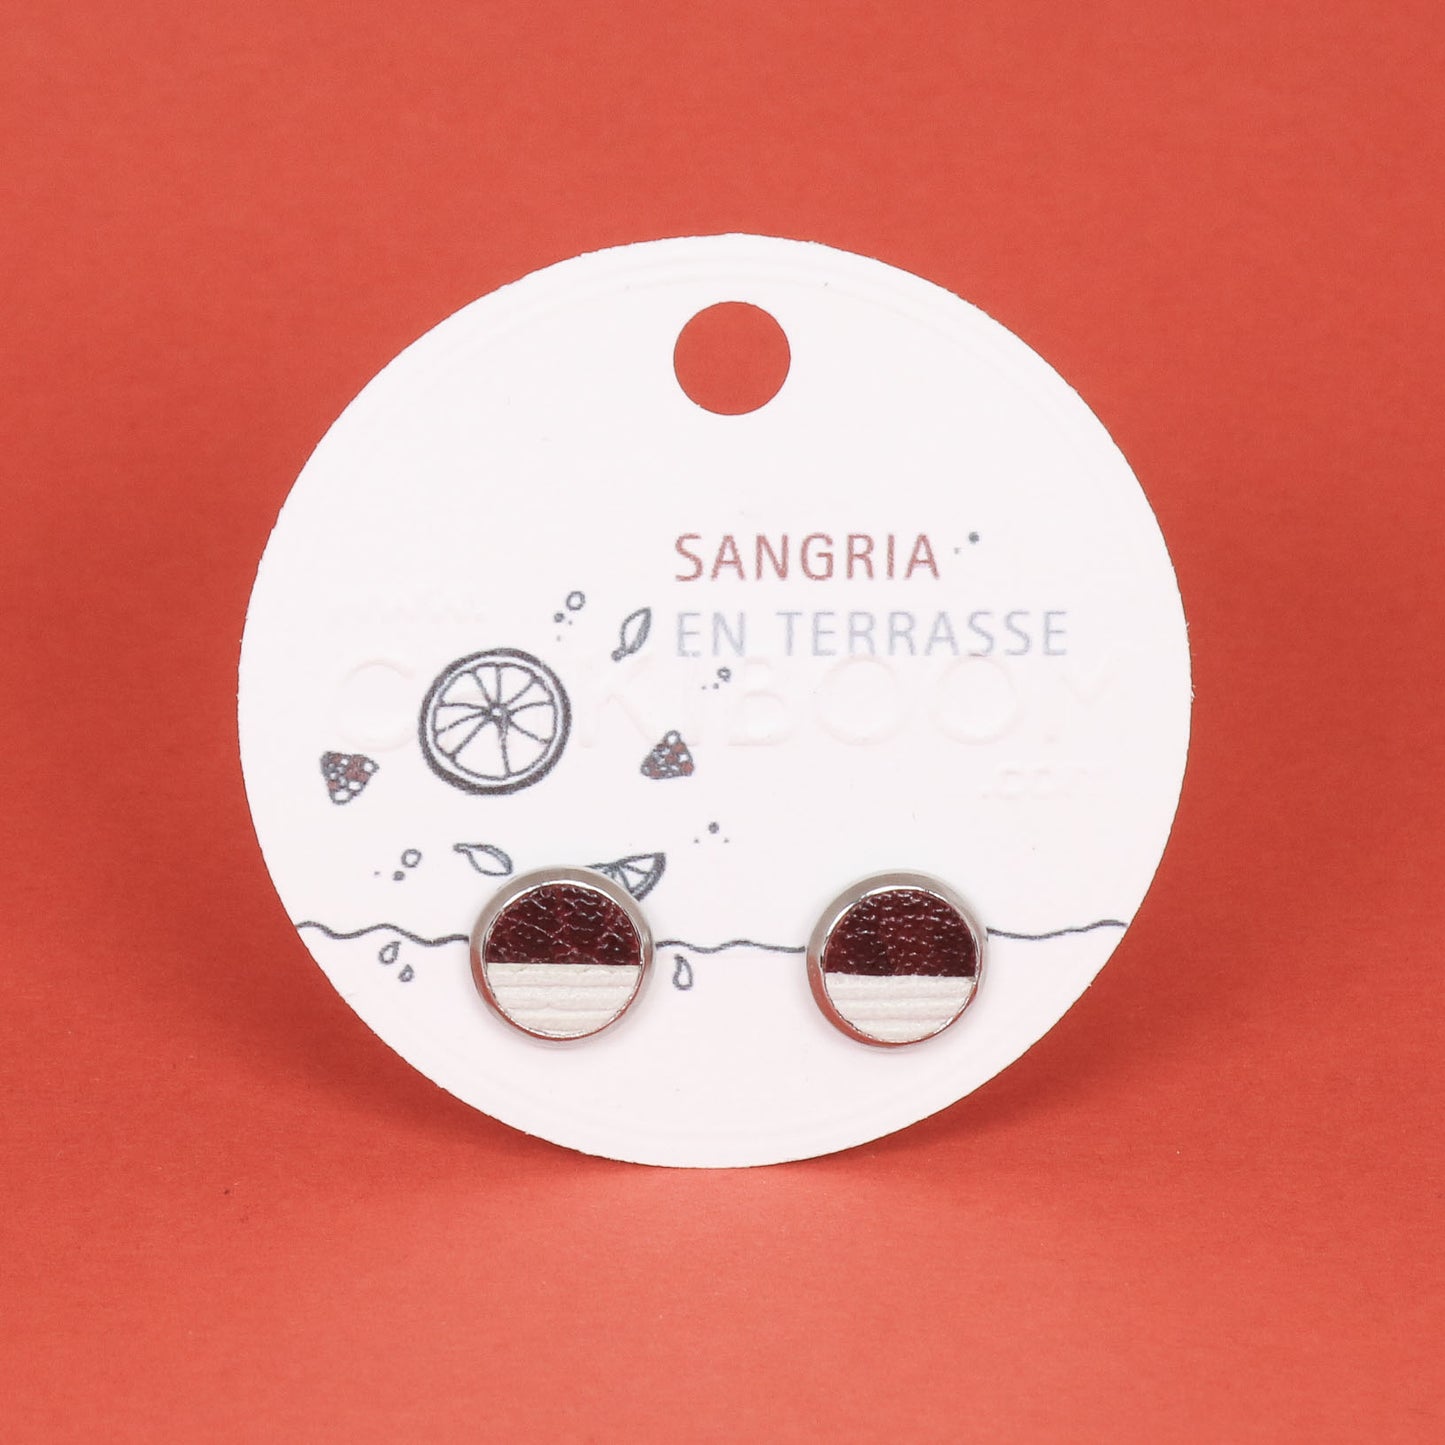 Sangria earrings